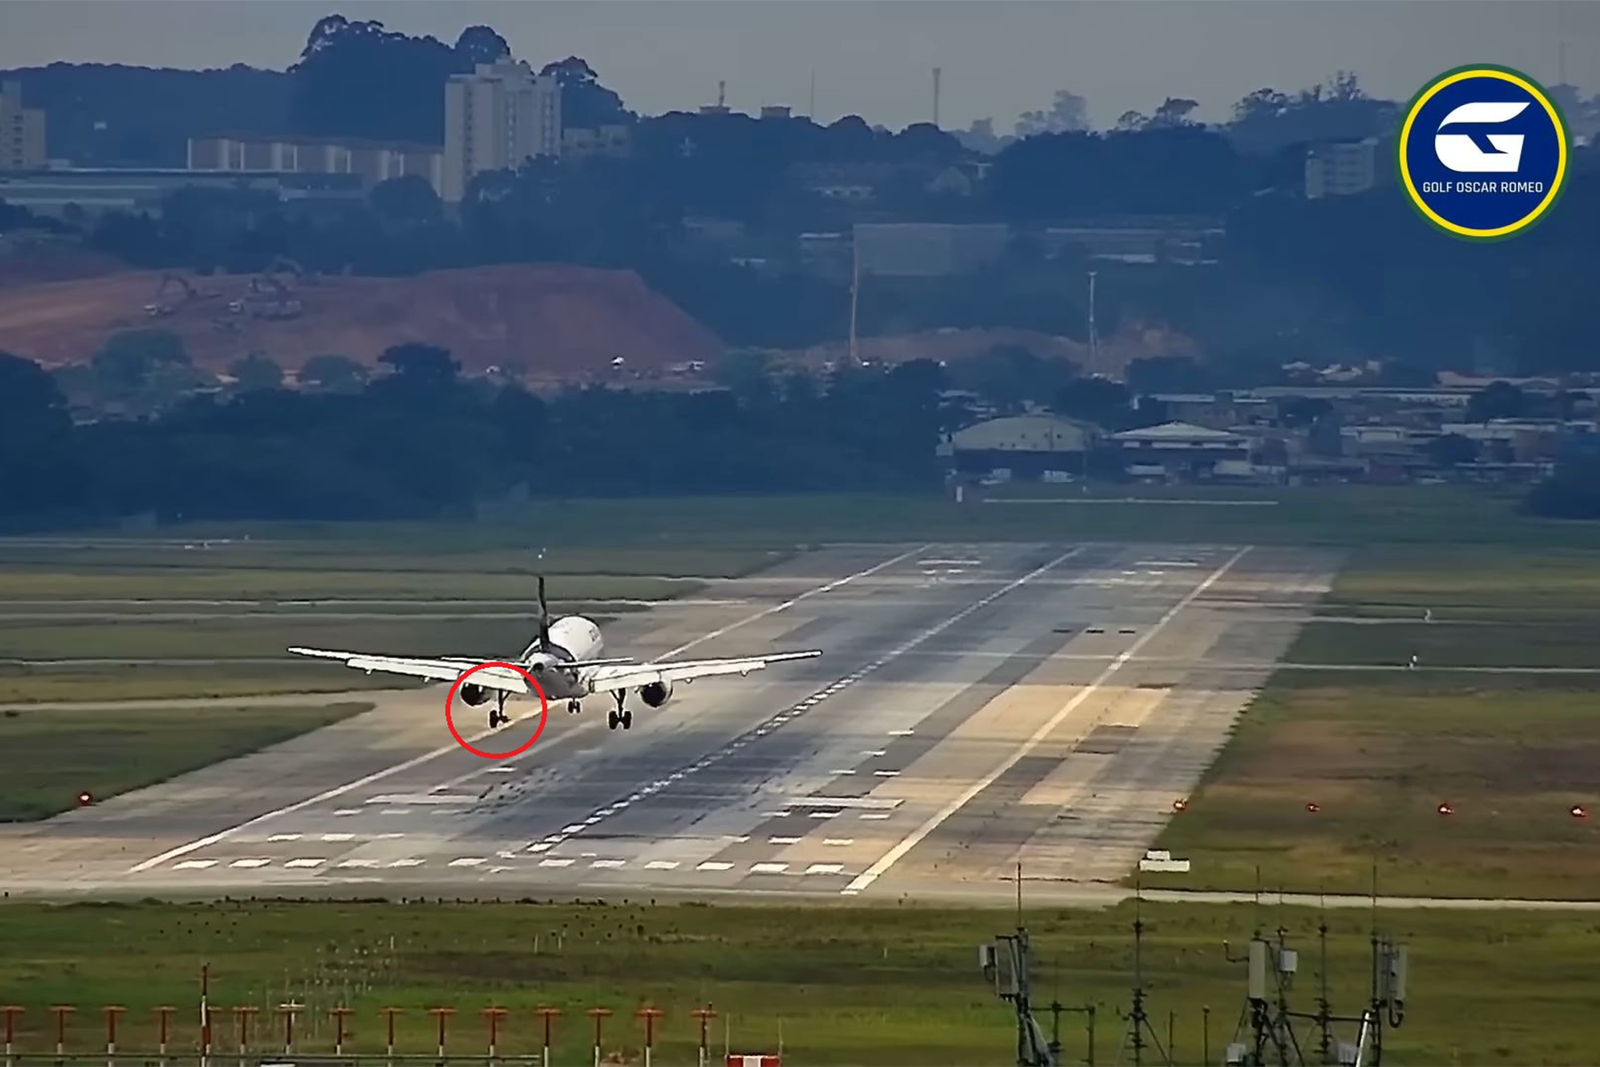 Momento del aterrizaje del A319 de LATAM en Sao Paulo. Fotograma del vídeo de Golf Oscar Romeo